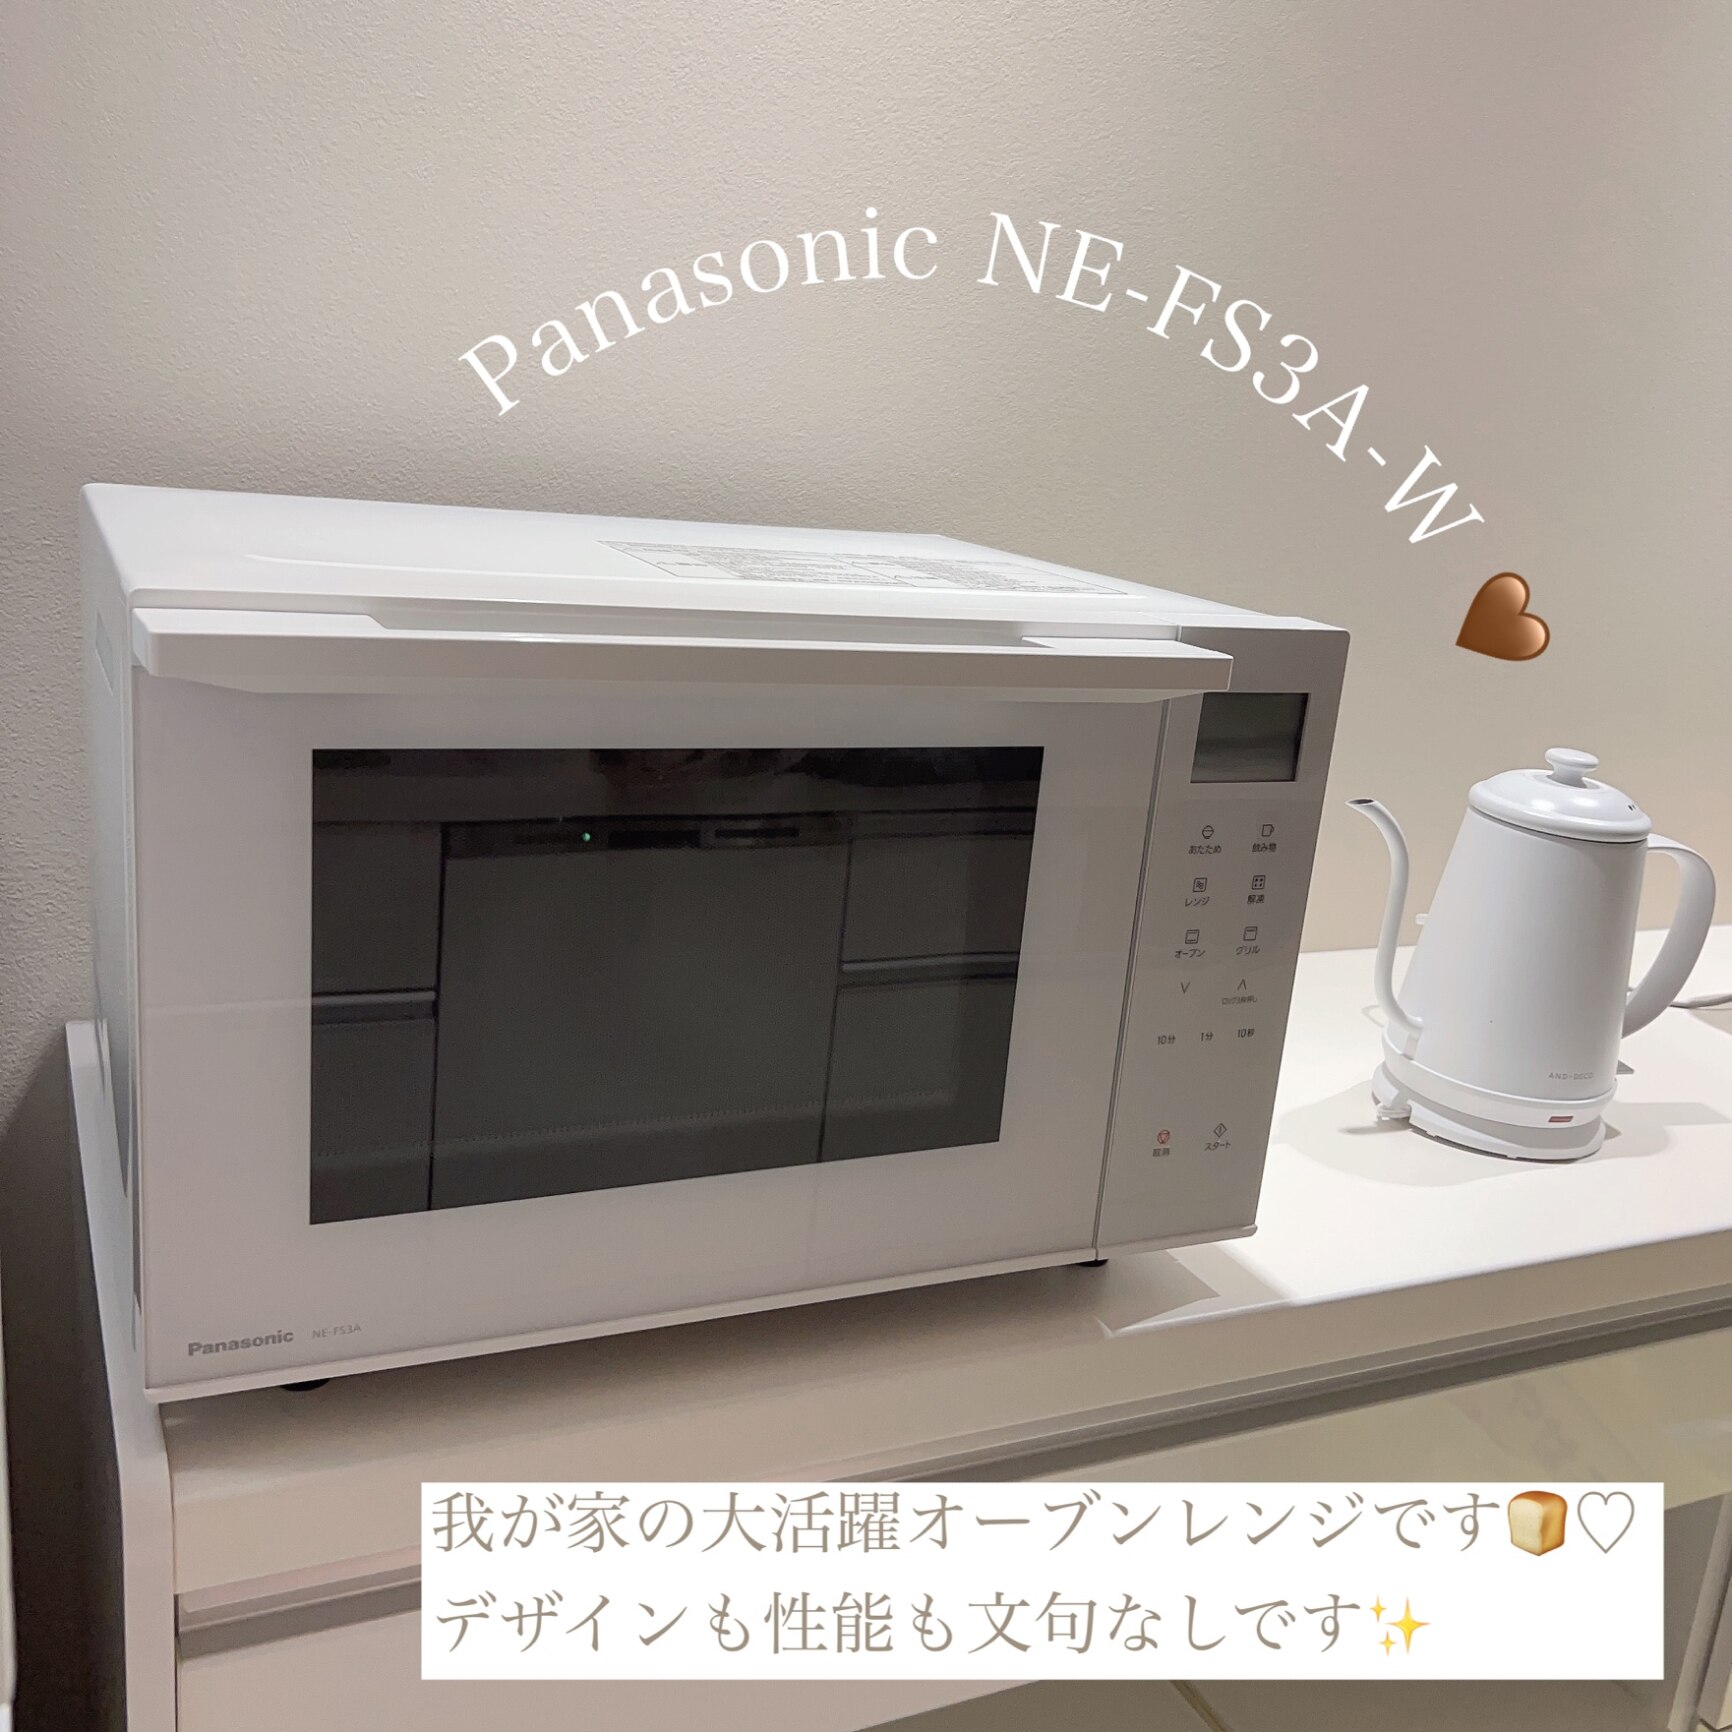 パナソニック Panasonic NE-FS3A-W オーブンレンジ ホワイト 23L